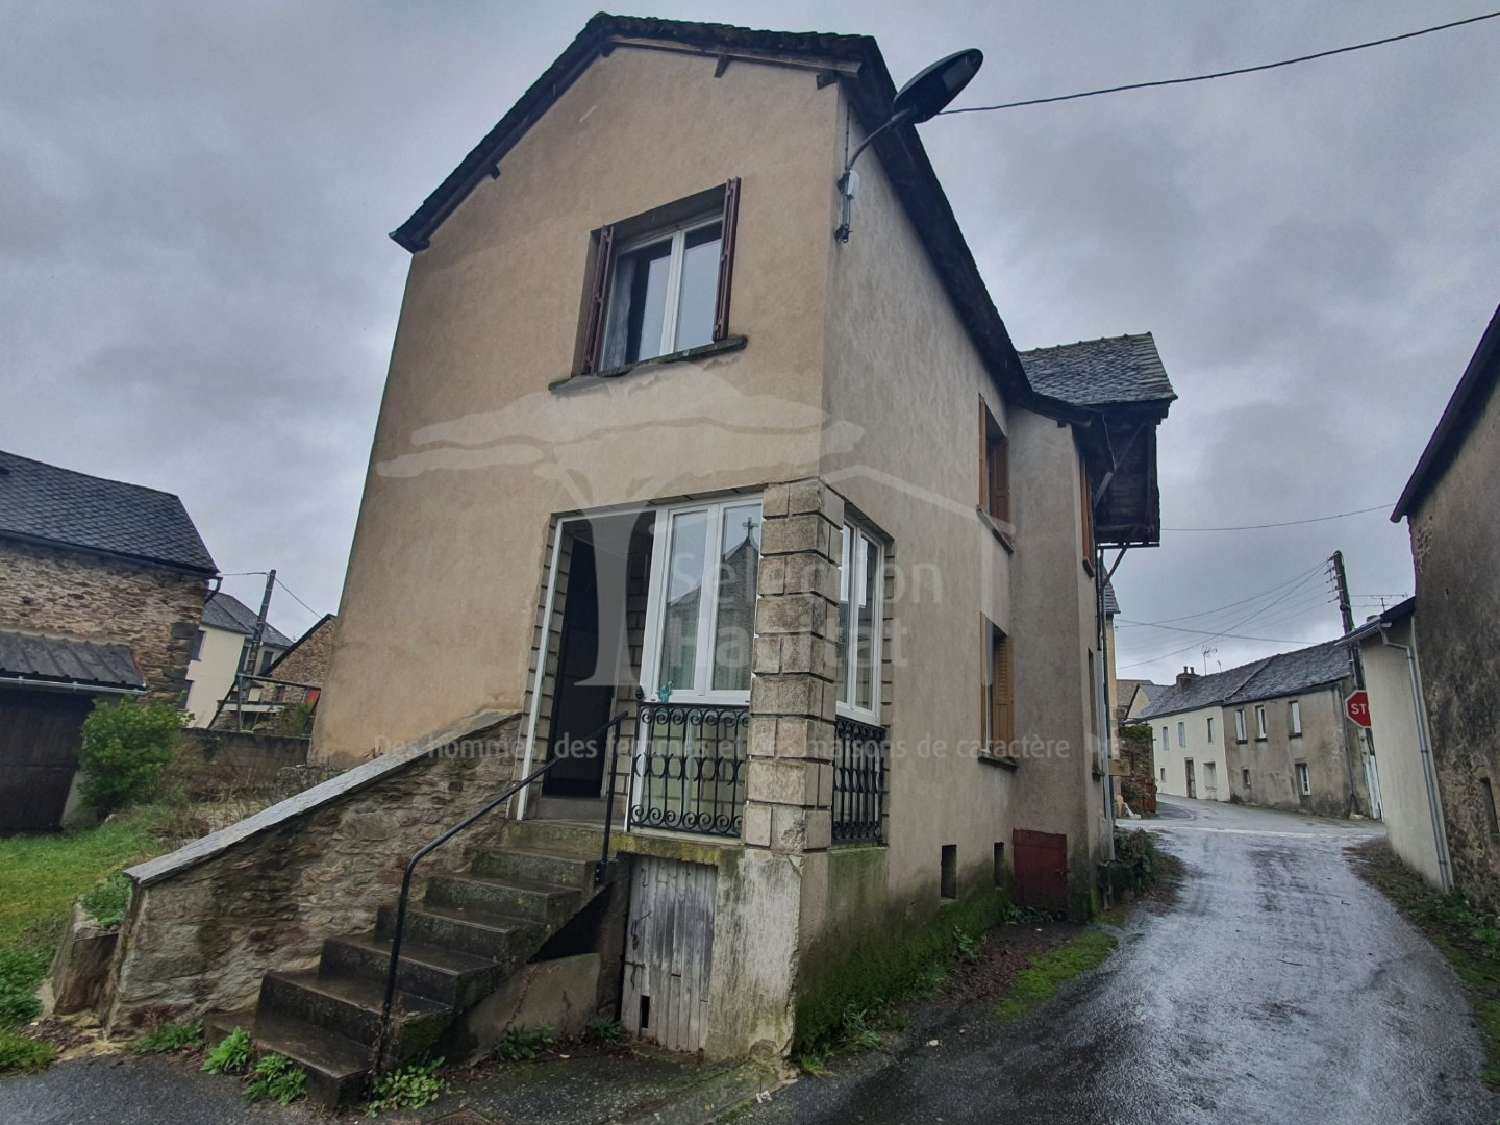  à vendre maison de village Pradinas Aveyron 2